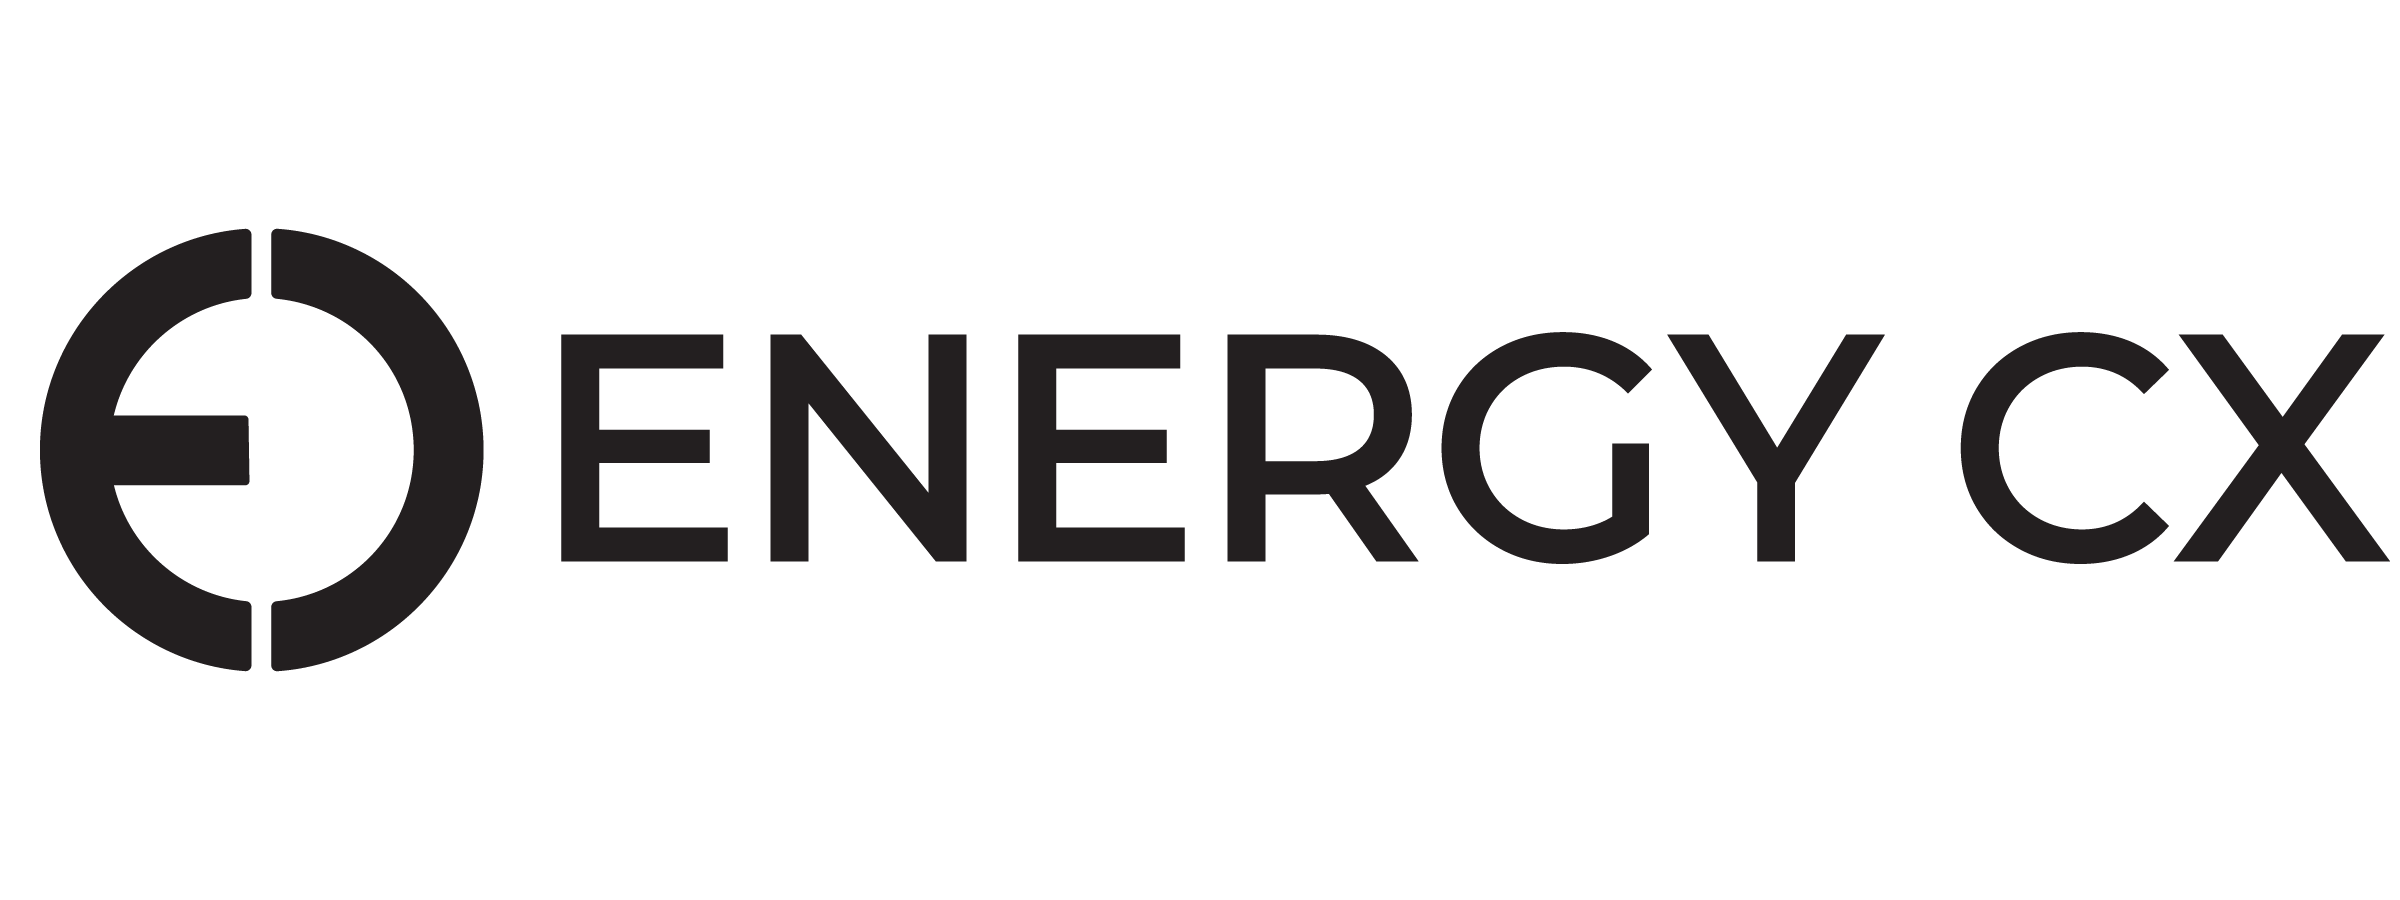 Copy of Energy Cx_Logo Suite-02